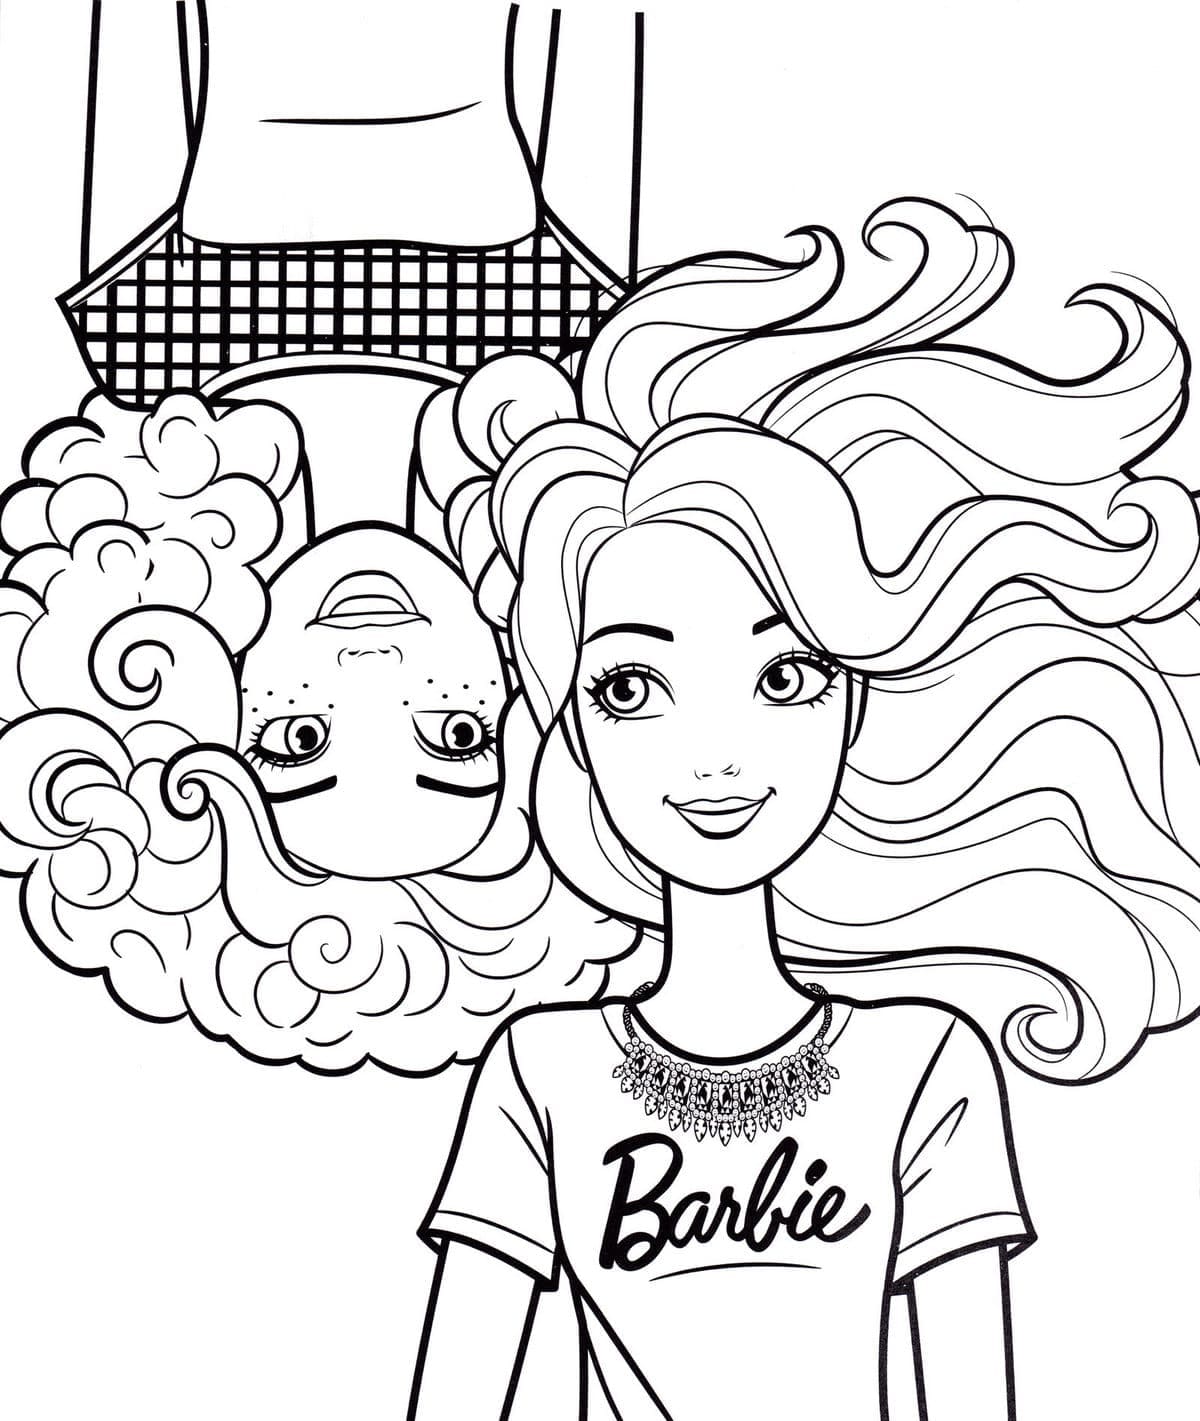 Barbie coloring pages - ColoringLib